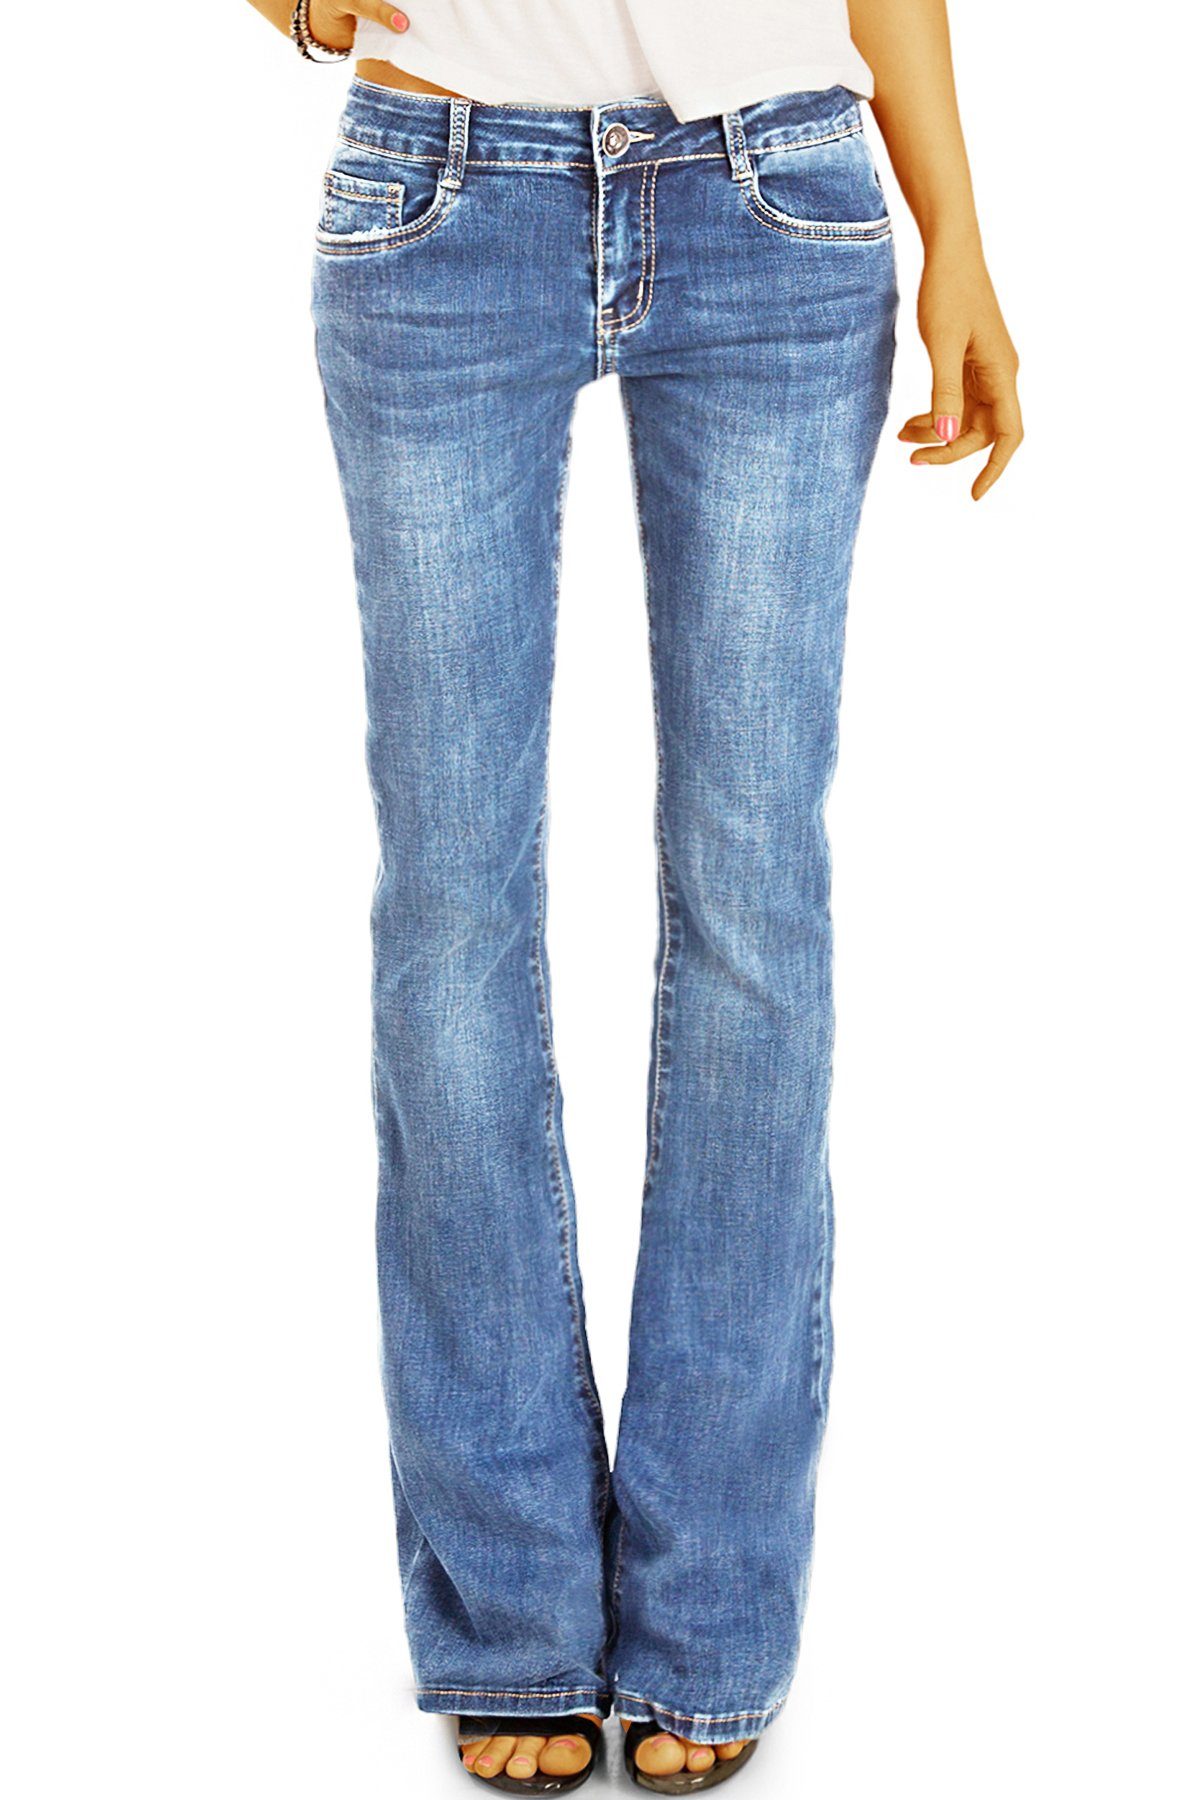 be styled Bootcut-Jeans medium Damenhose, Bein denimblau dunkelblau und waist j16p in ausgestelltes 5-pocket